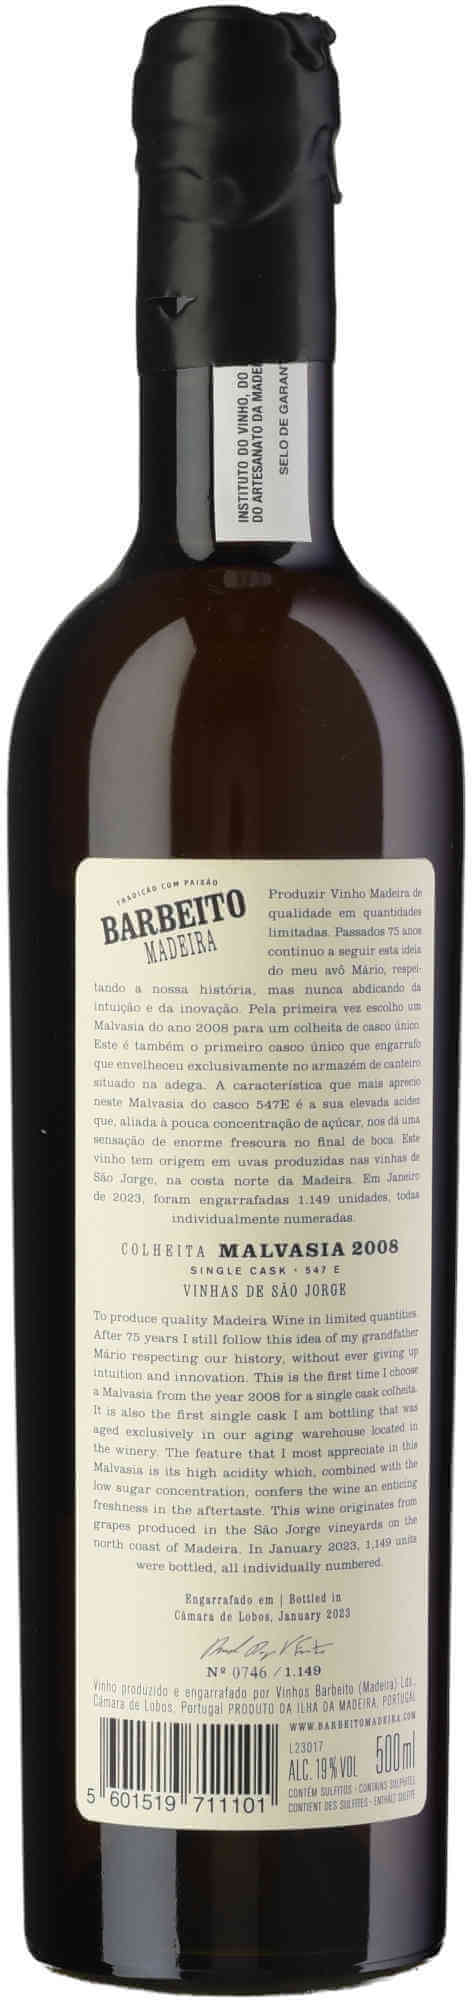 Barbeito-Malvasia-Colheita-2008-Back